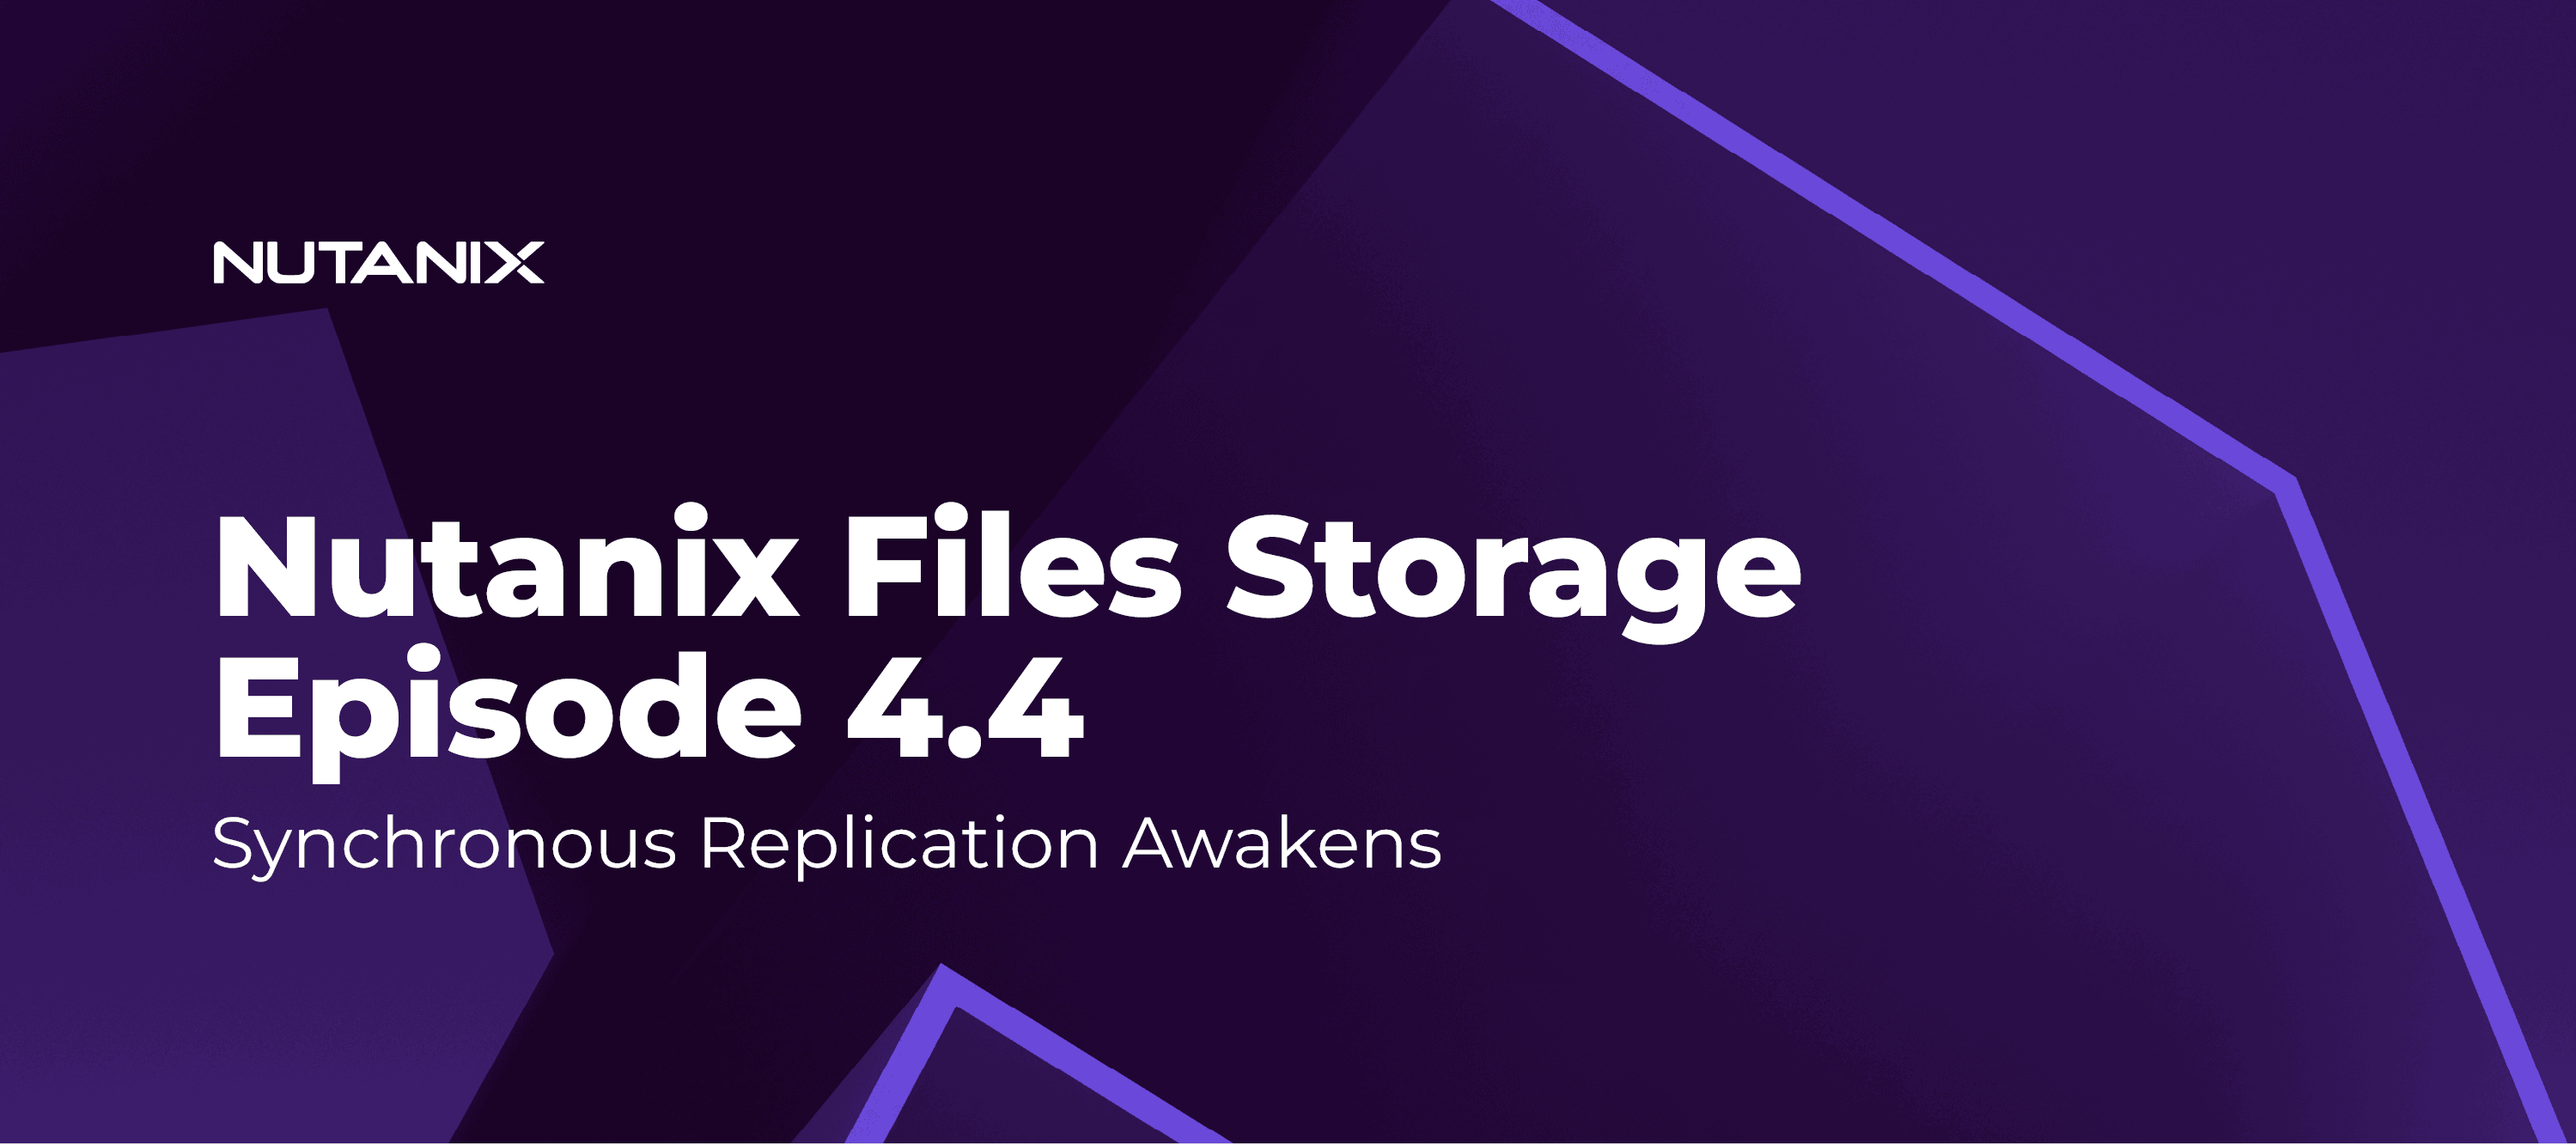 Nutanix Files Storage Episode 4.4 - Synchronous Replication Awakens